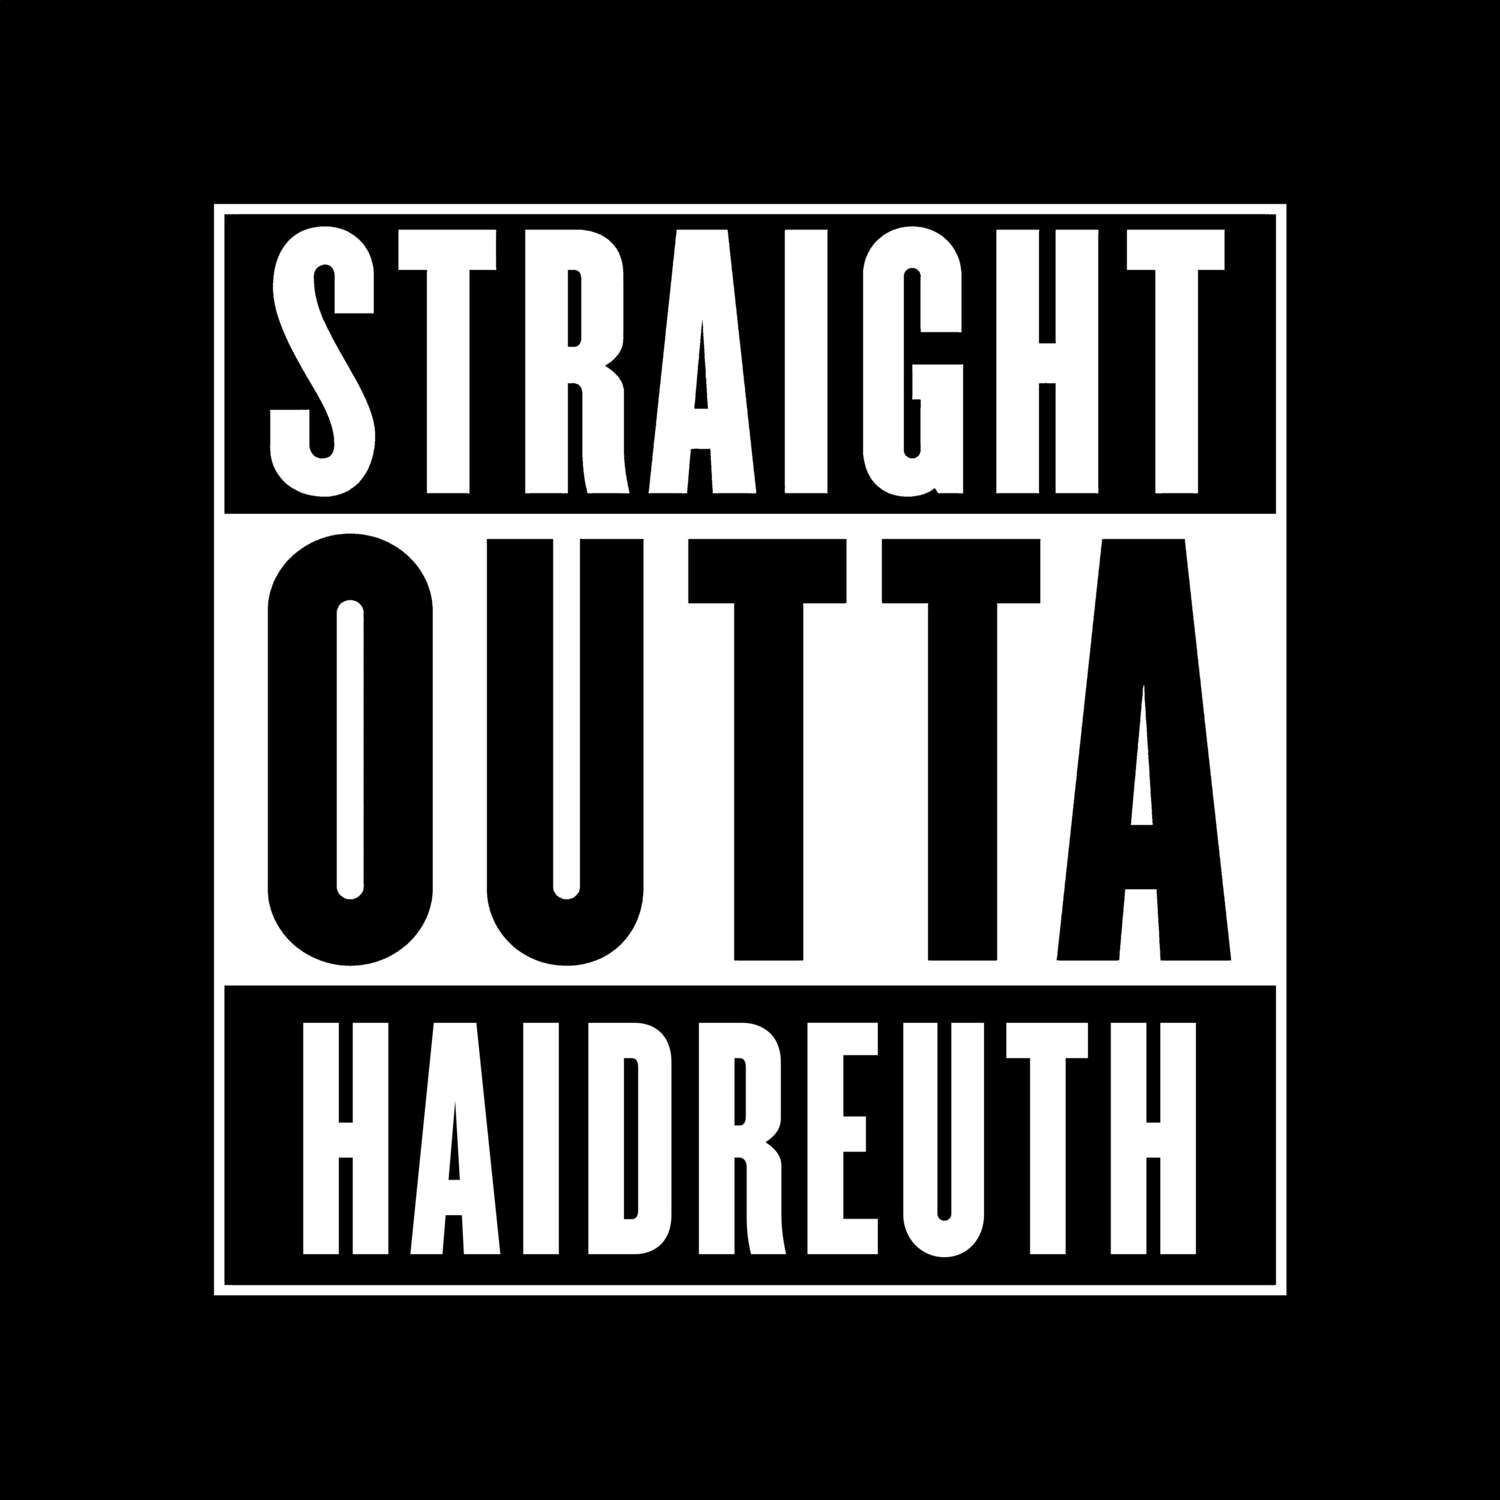 Haidreuth T-Shirt »Straight Outta«